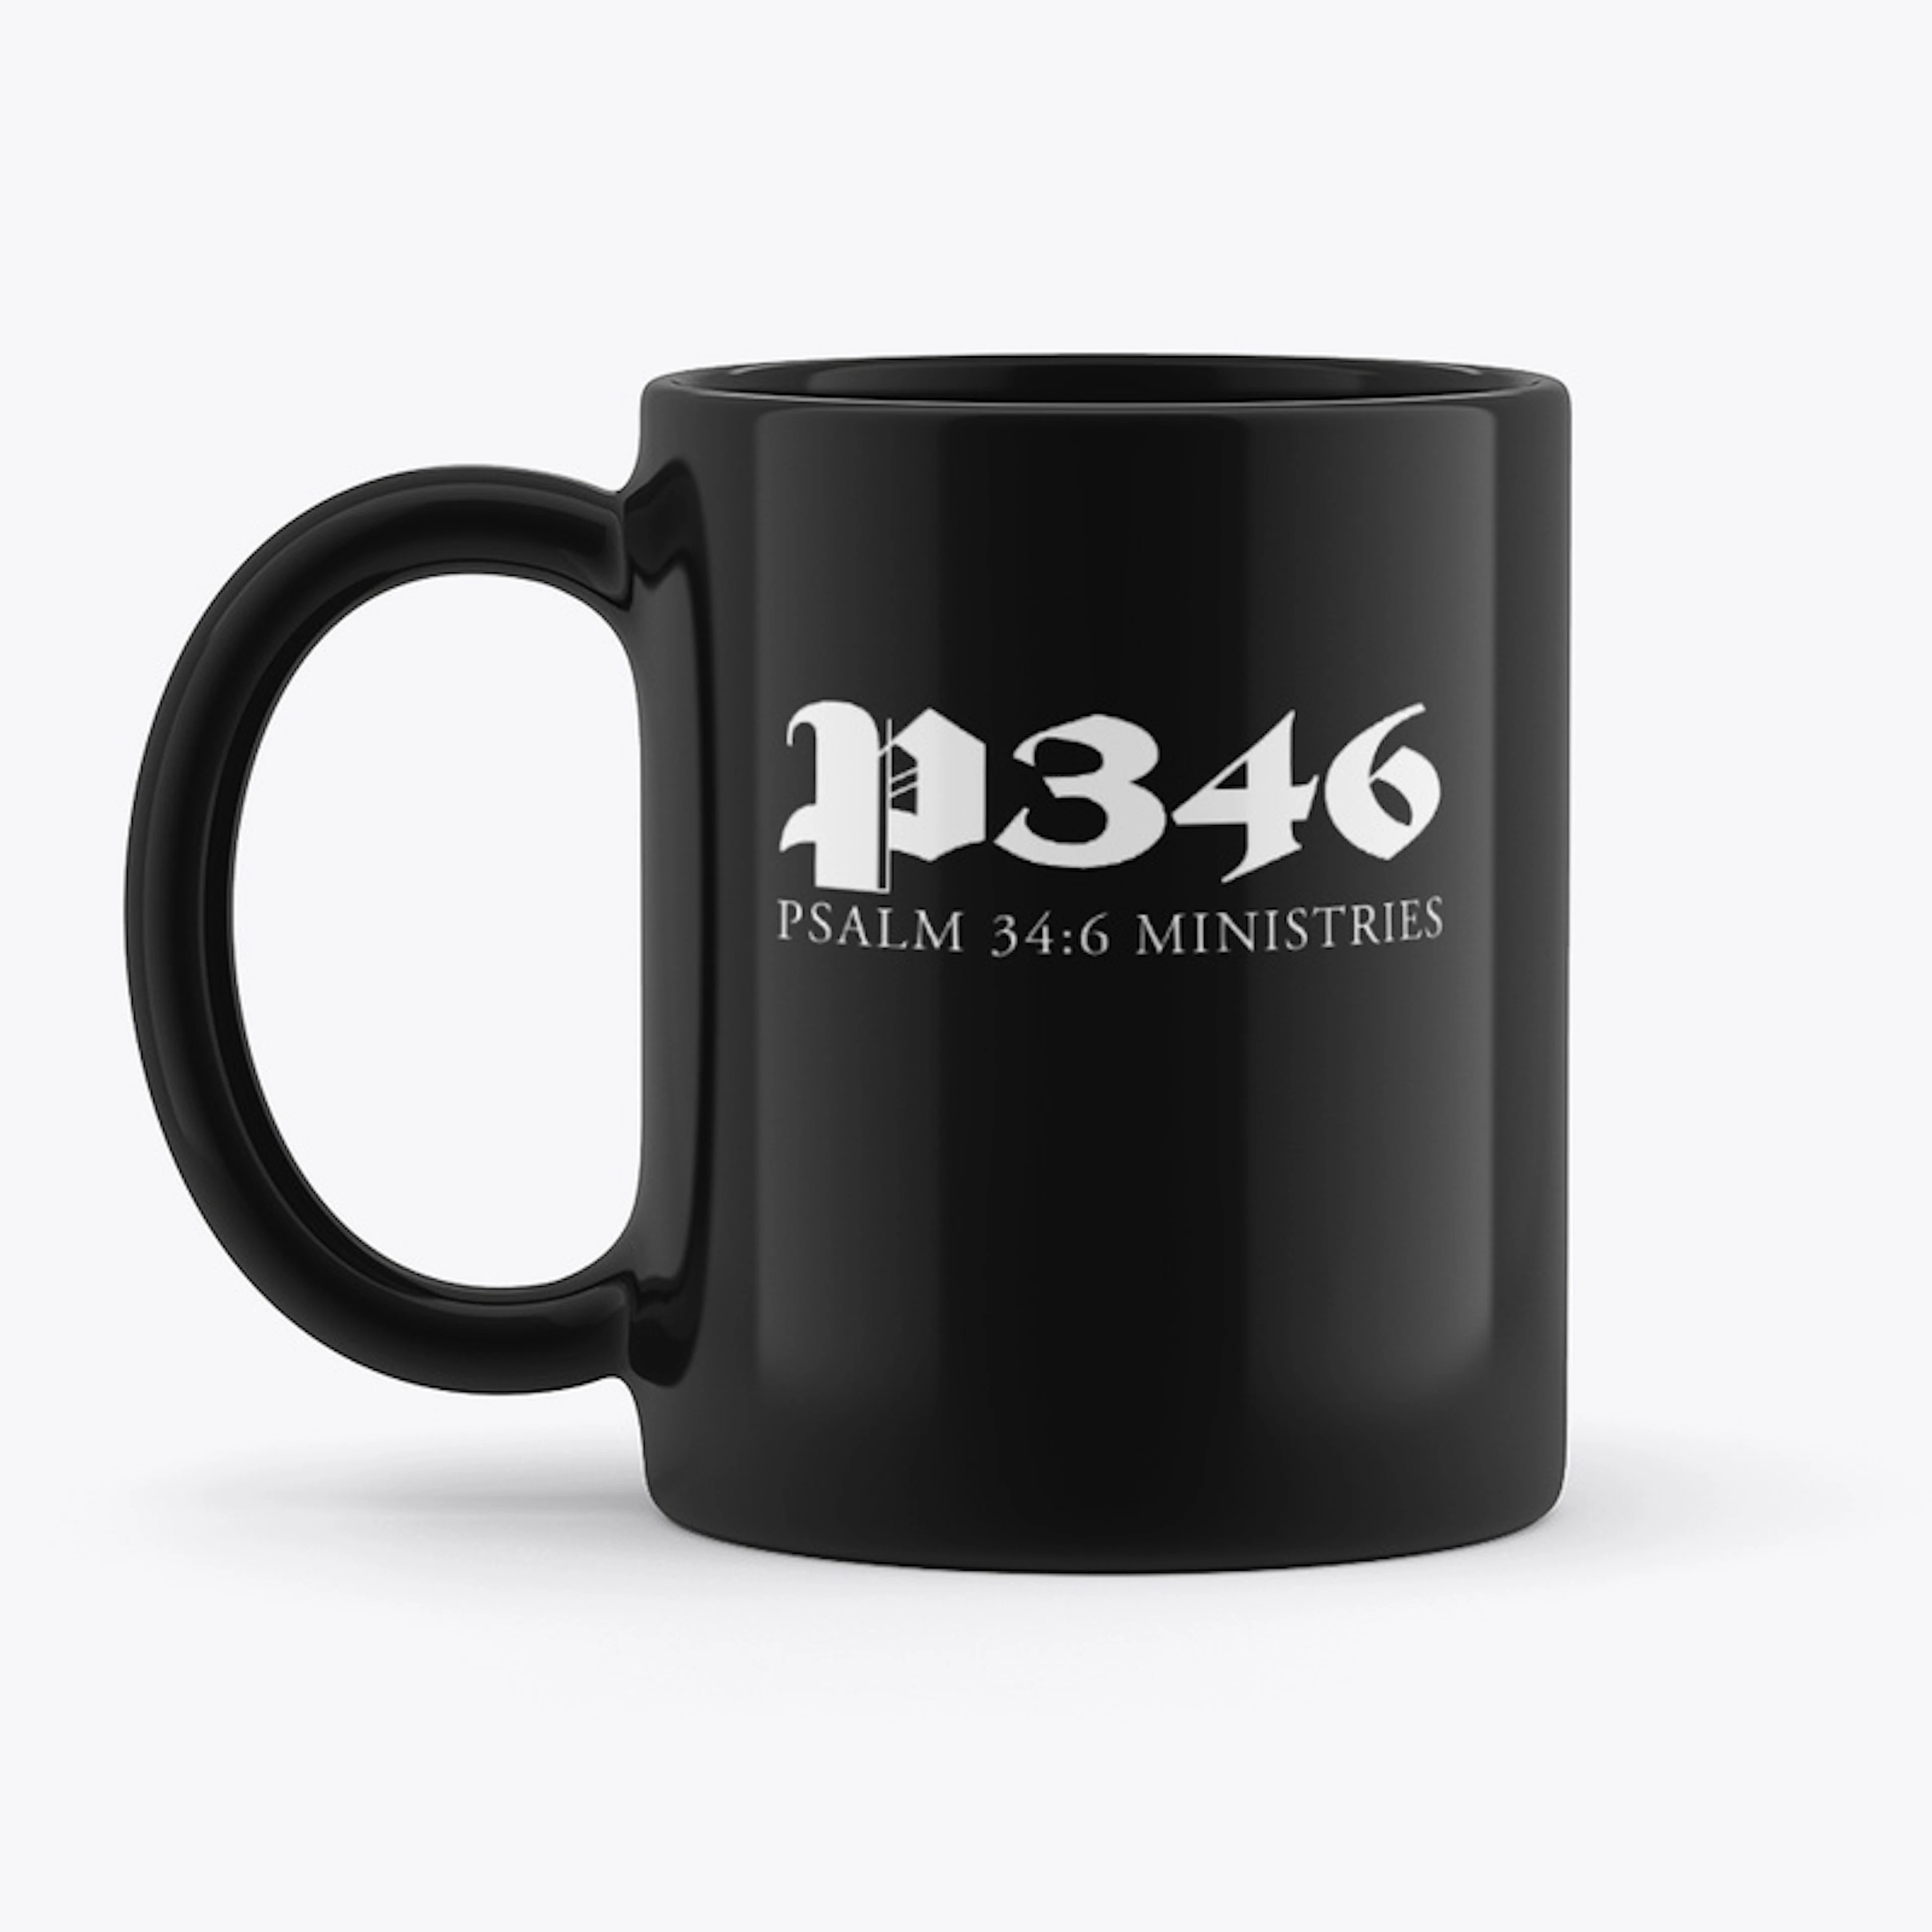 P346 Black Mug